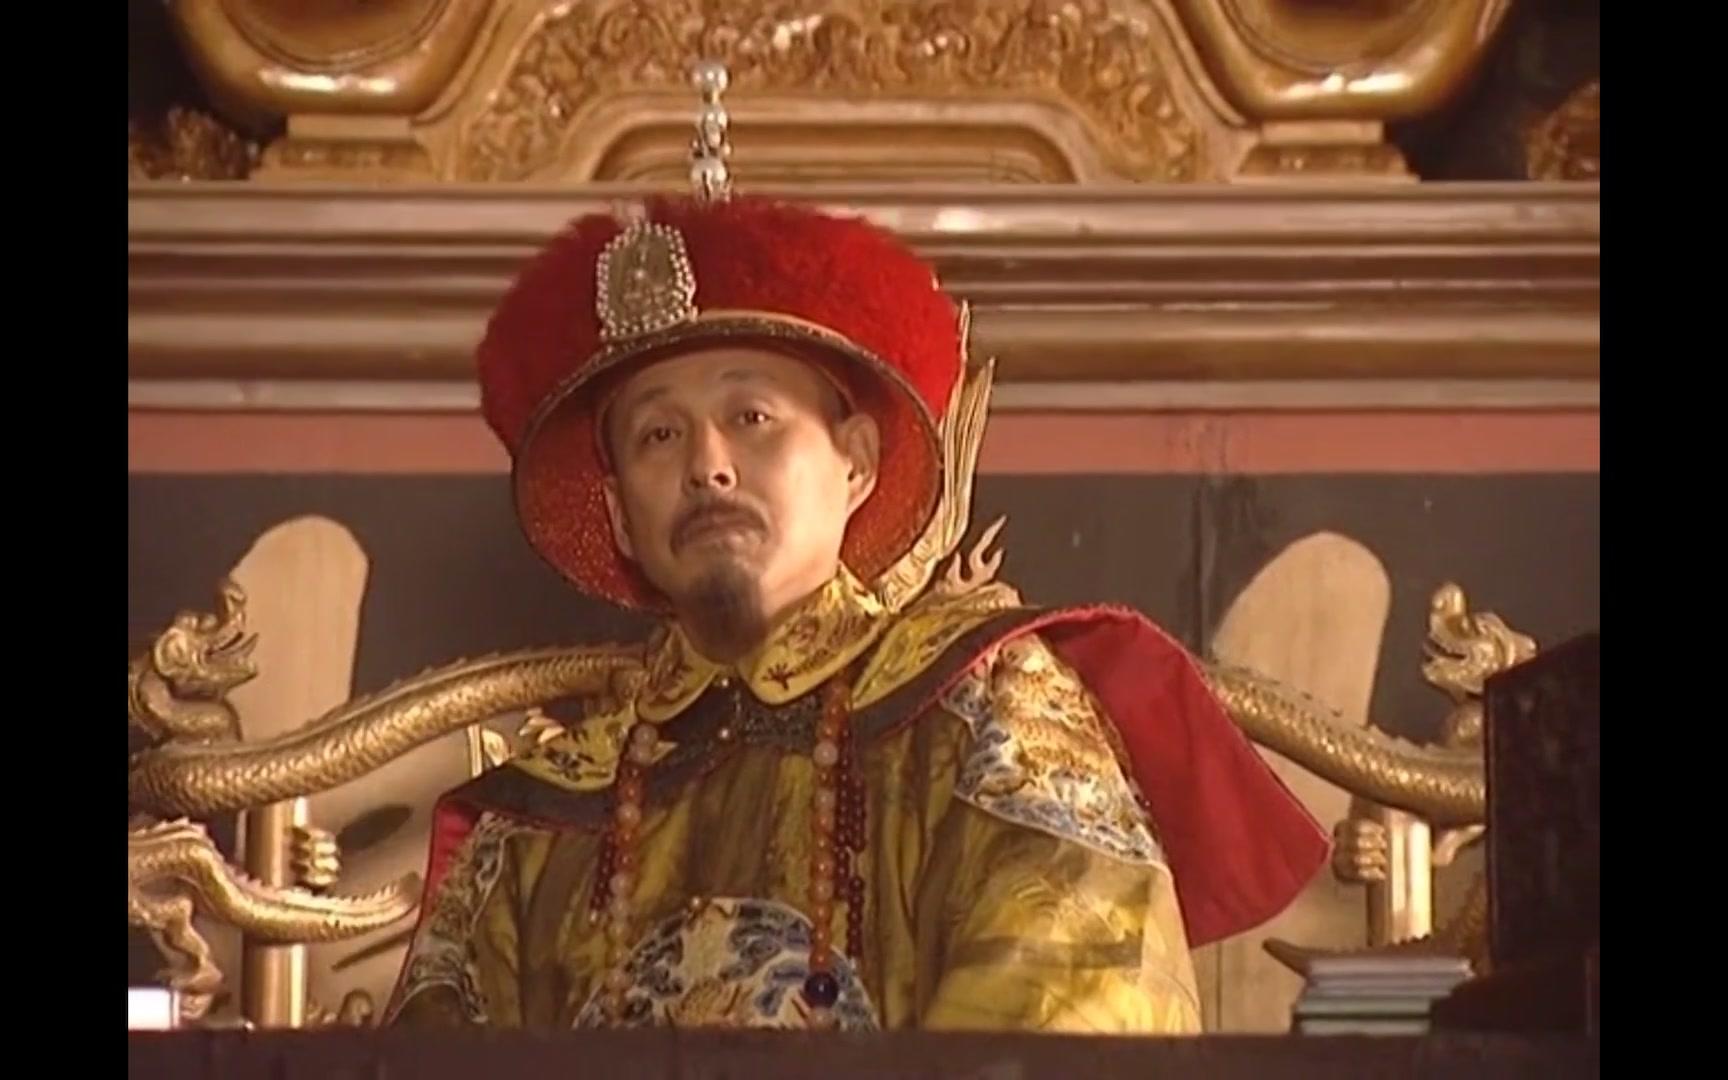 雍正王朝:康熙帝驾崩的当晚,隐藏最深的人物是哪一位?